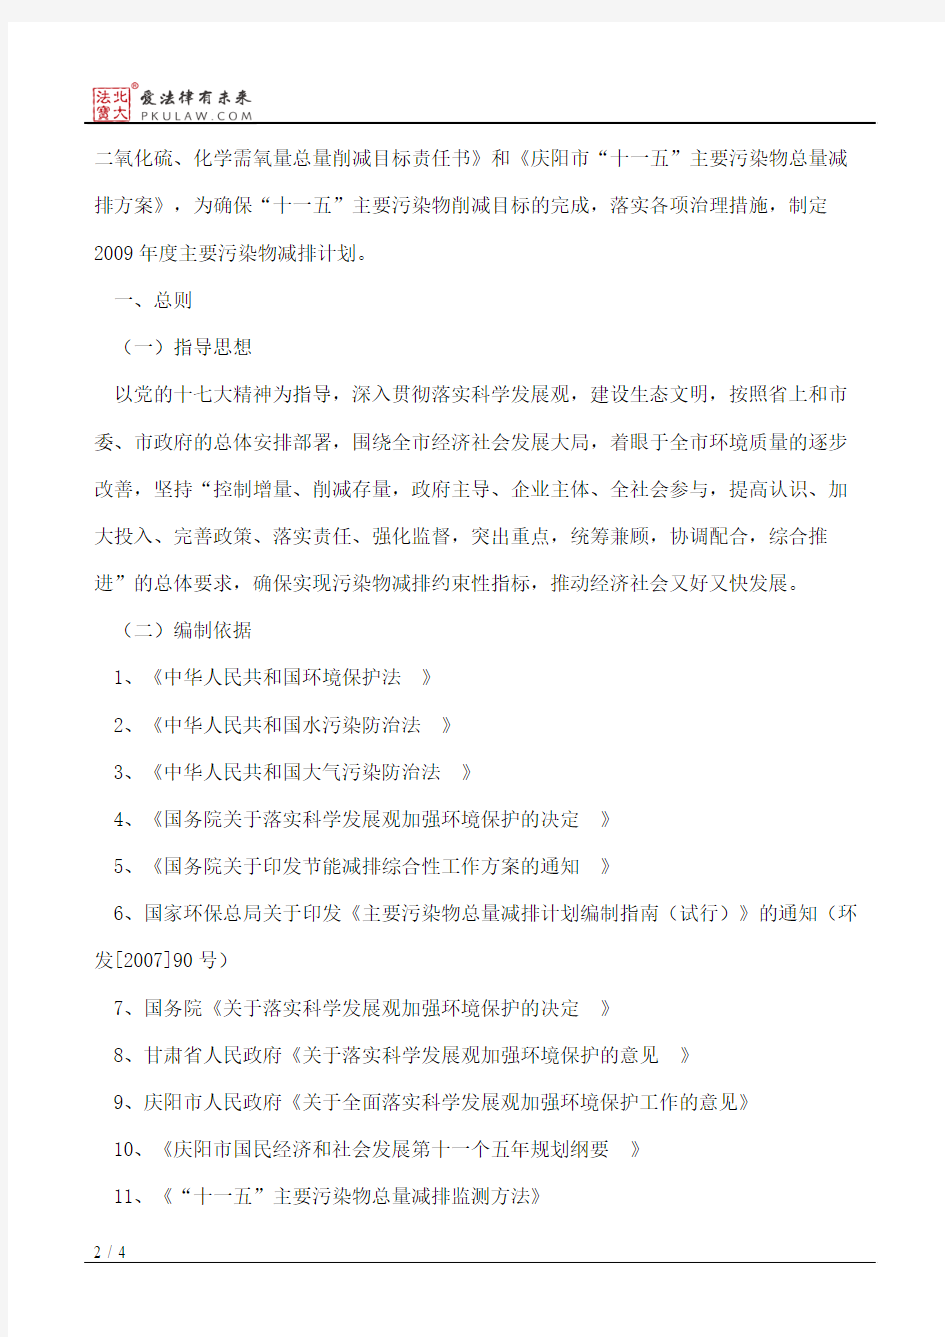 庆阳市人民政府办公室关于印发《庆阳市2009年度主要污染减排计划》的通知